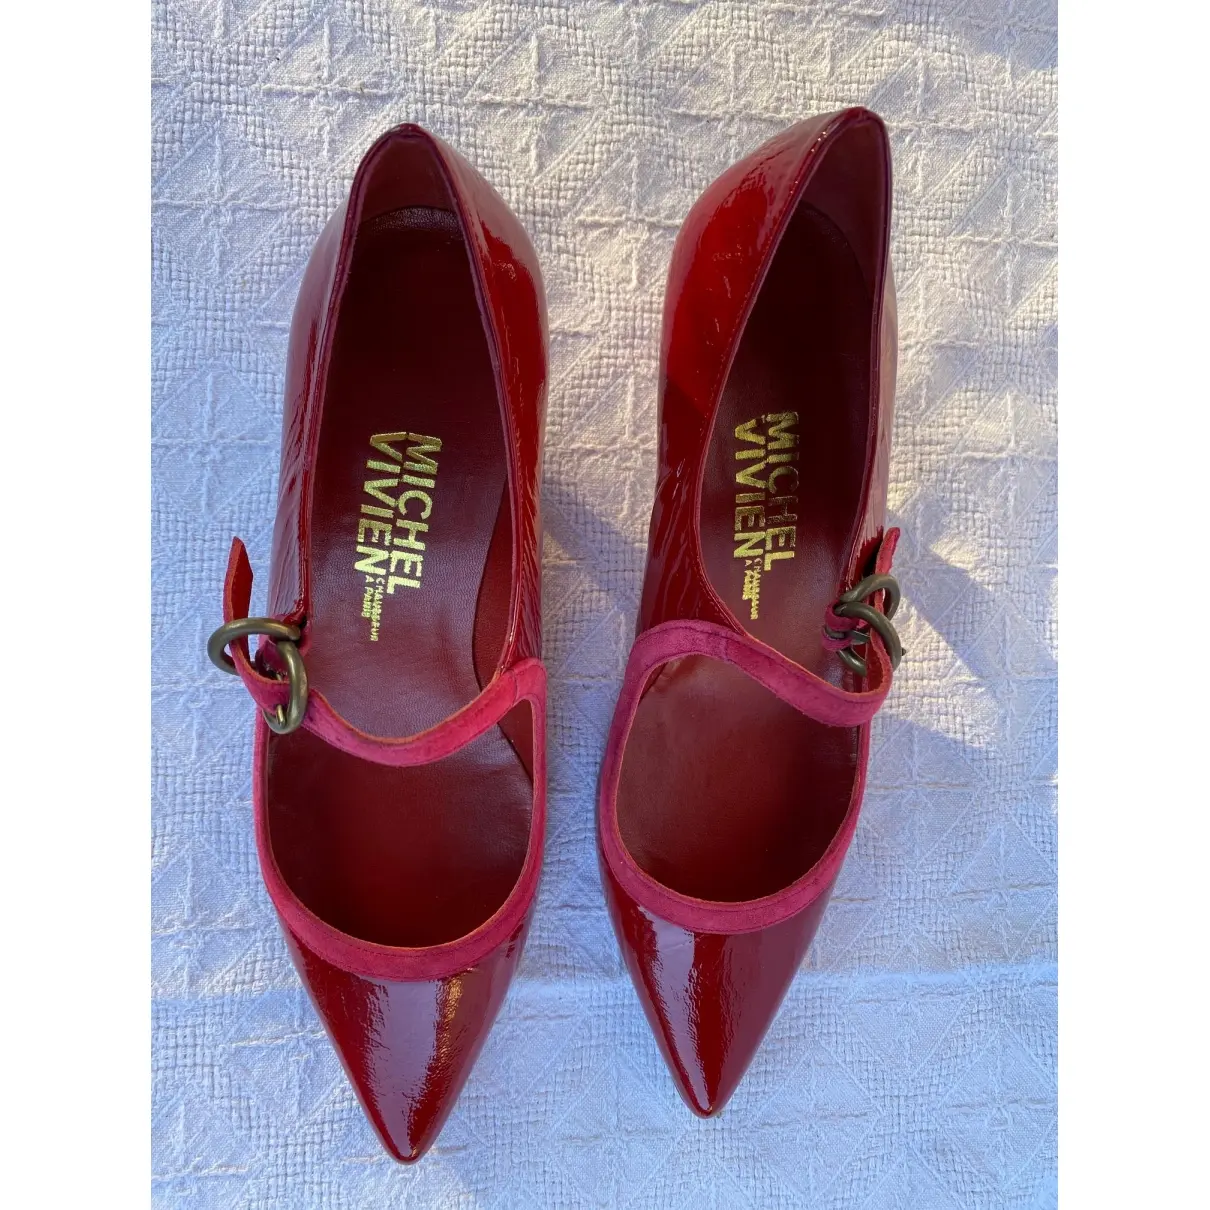 Buy Michel Vivien Patent leather heels online